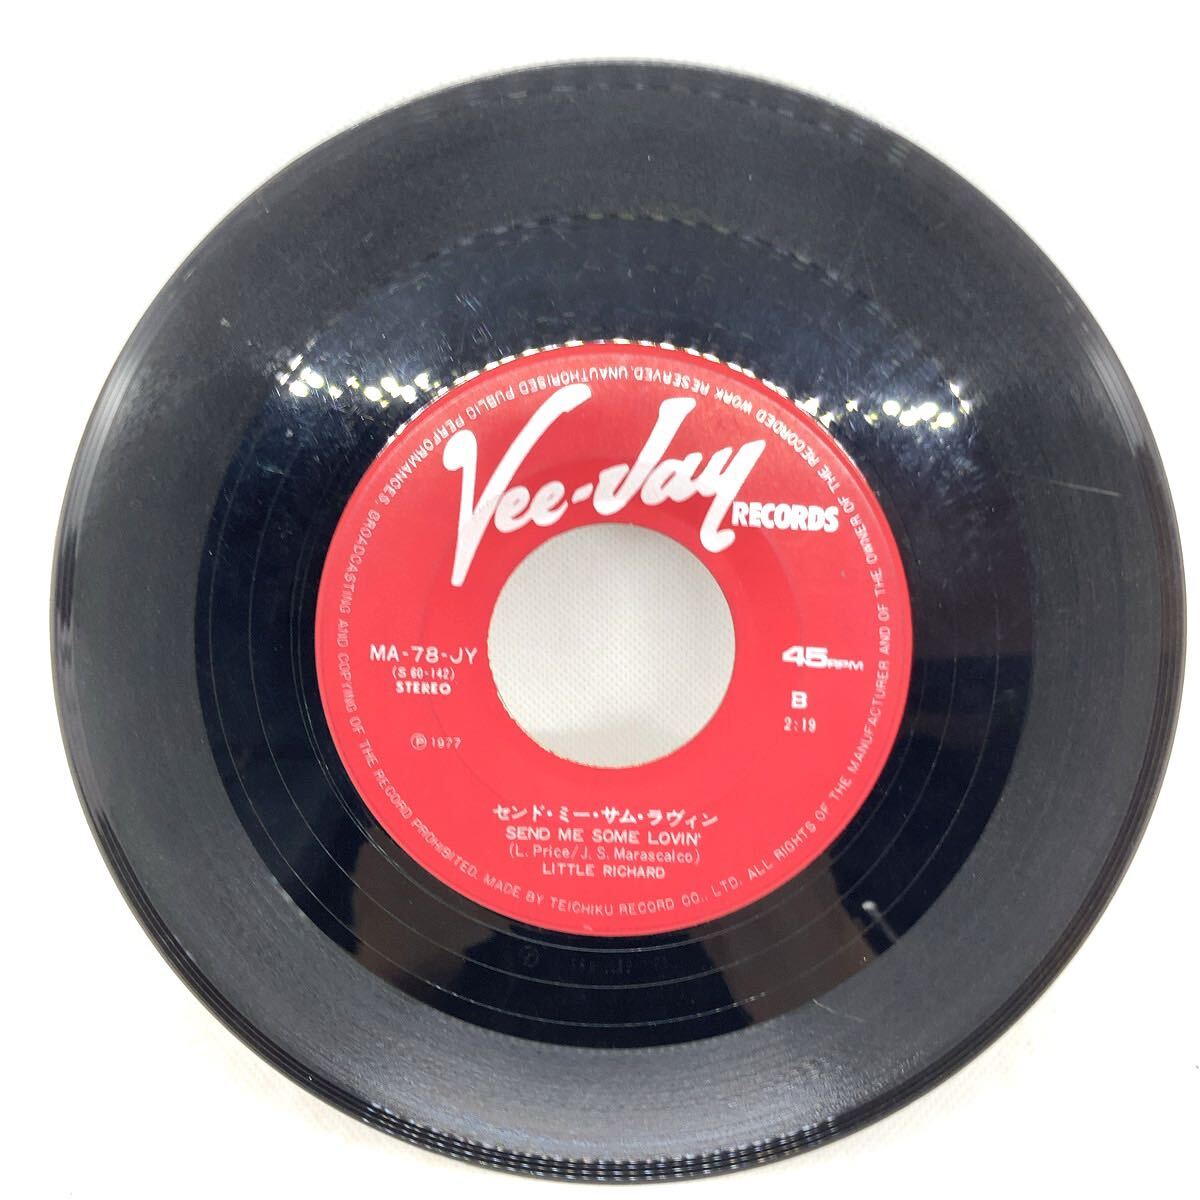 Little Richard - Long Tall Sally/Send Me Some Lovin' EP 7inch シングル レコード リトル・リチャード のっぽのサリー_画像2